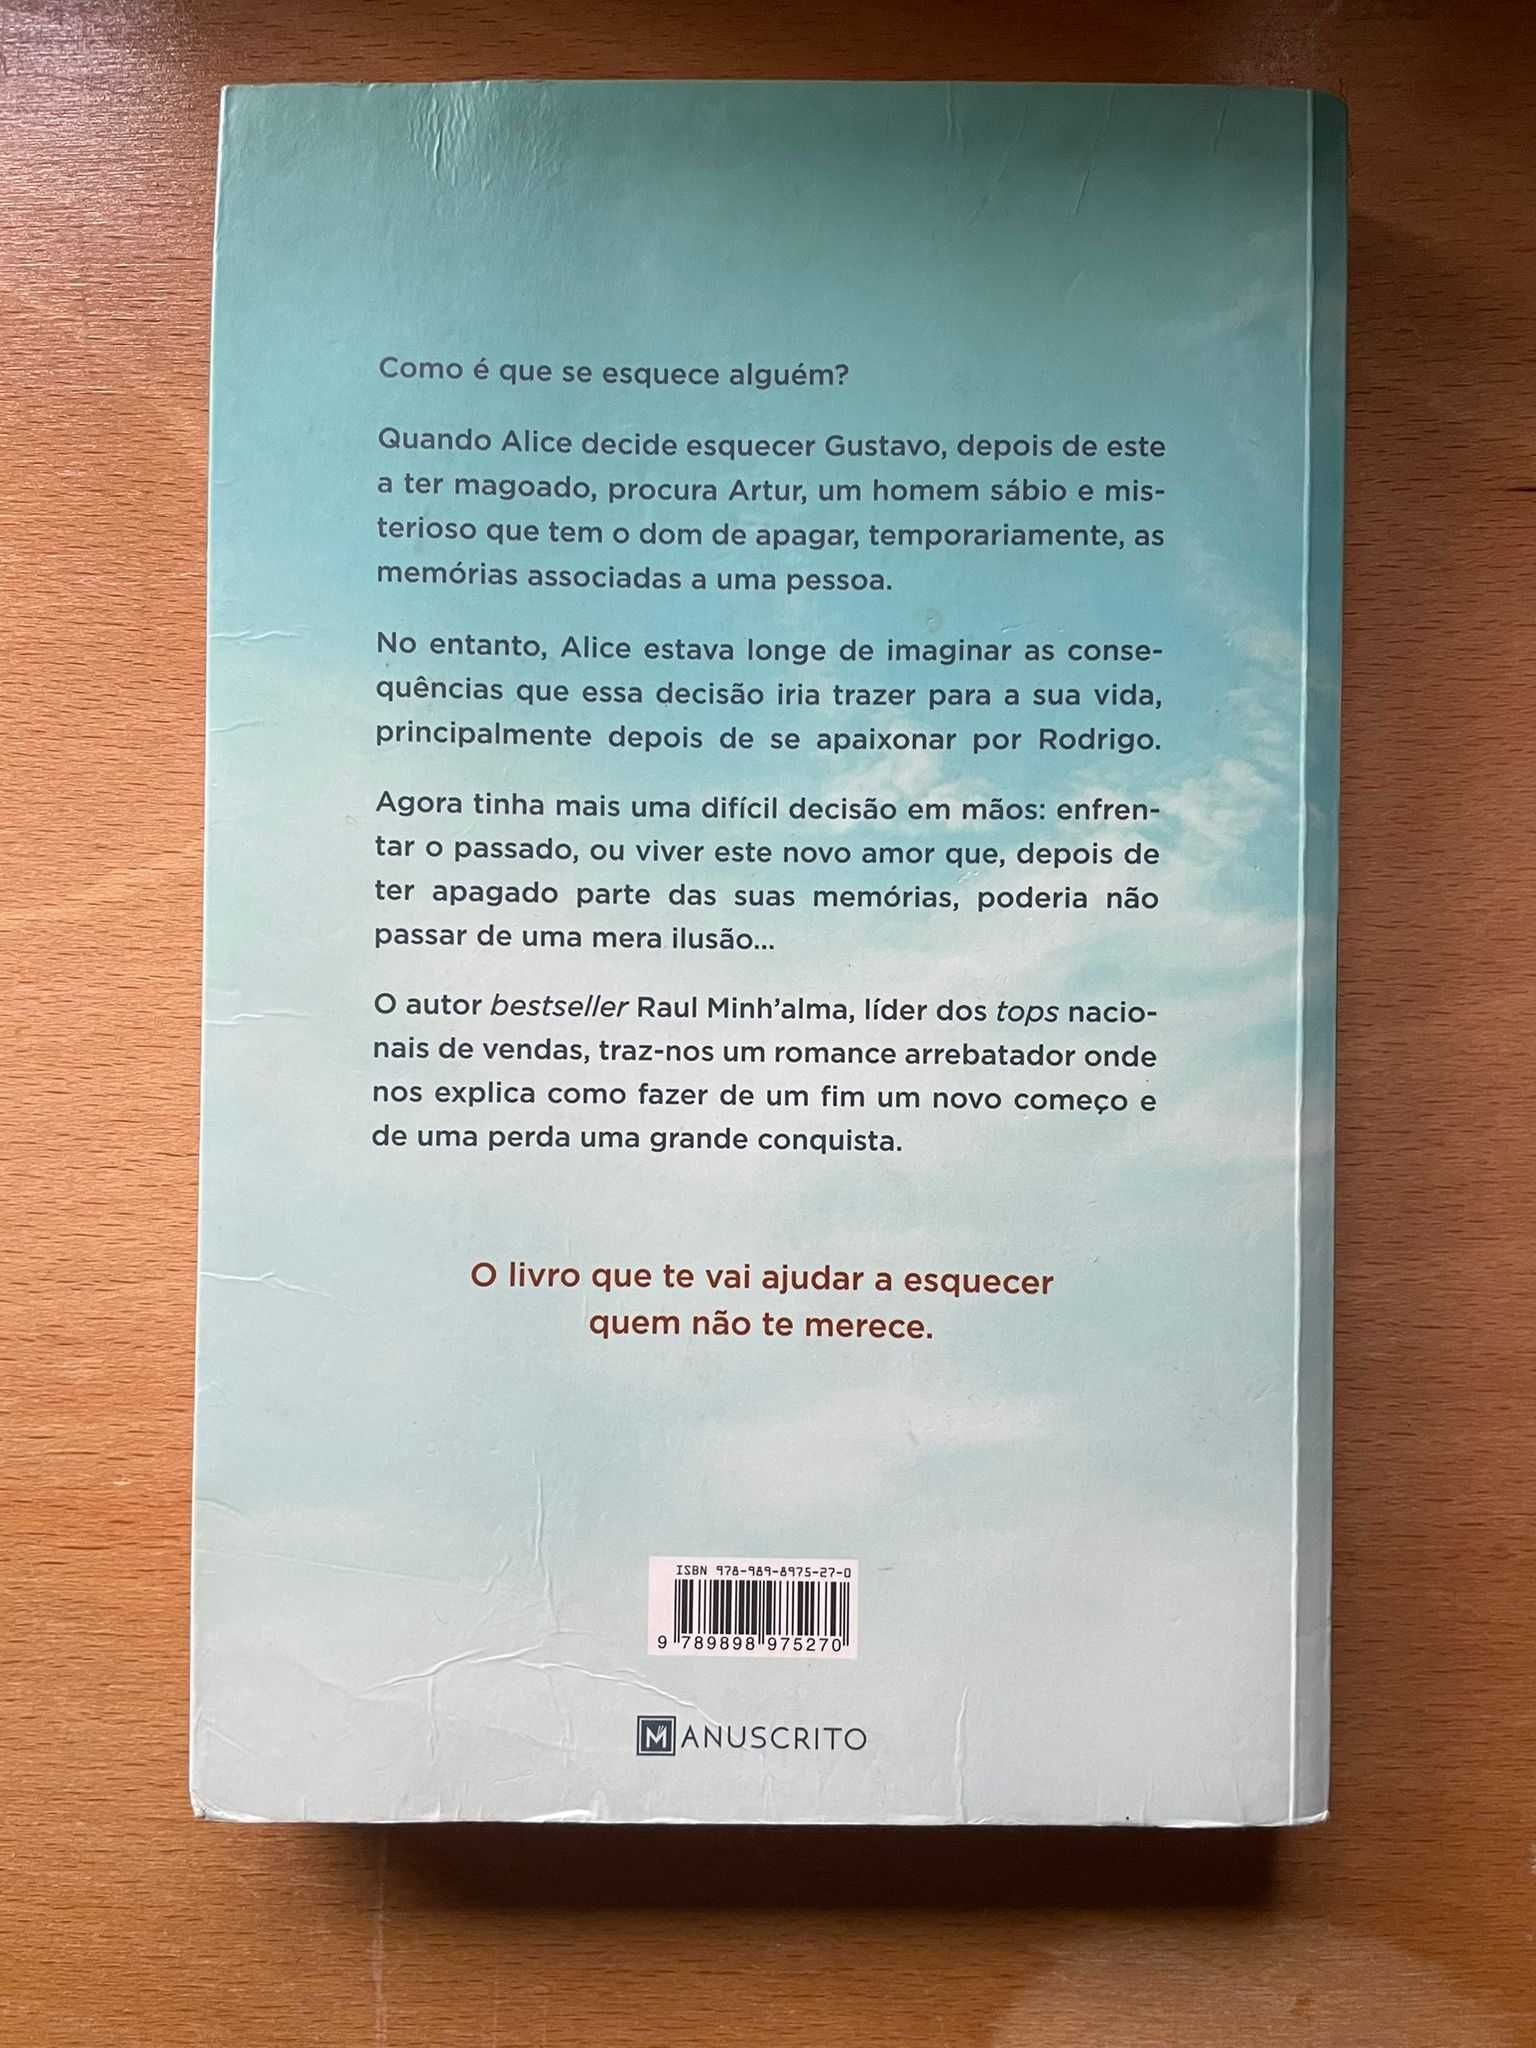 Livro "Ganhei uma Vida Quando te Perdi" - Raul Minh'alma